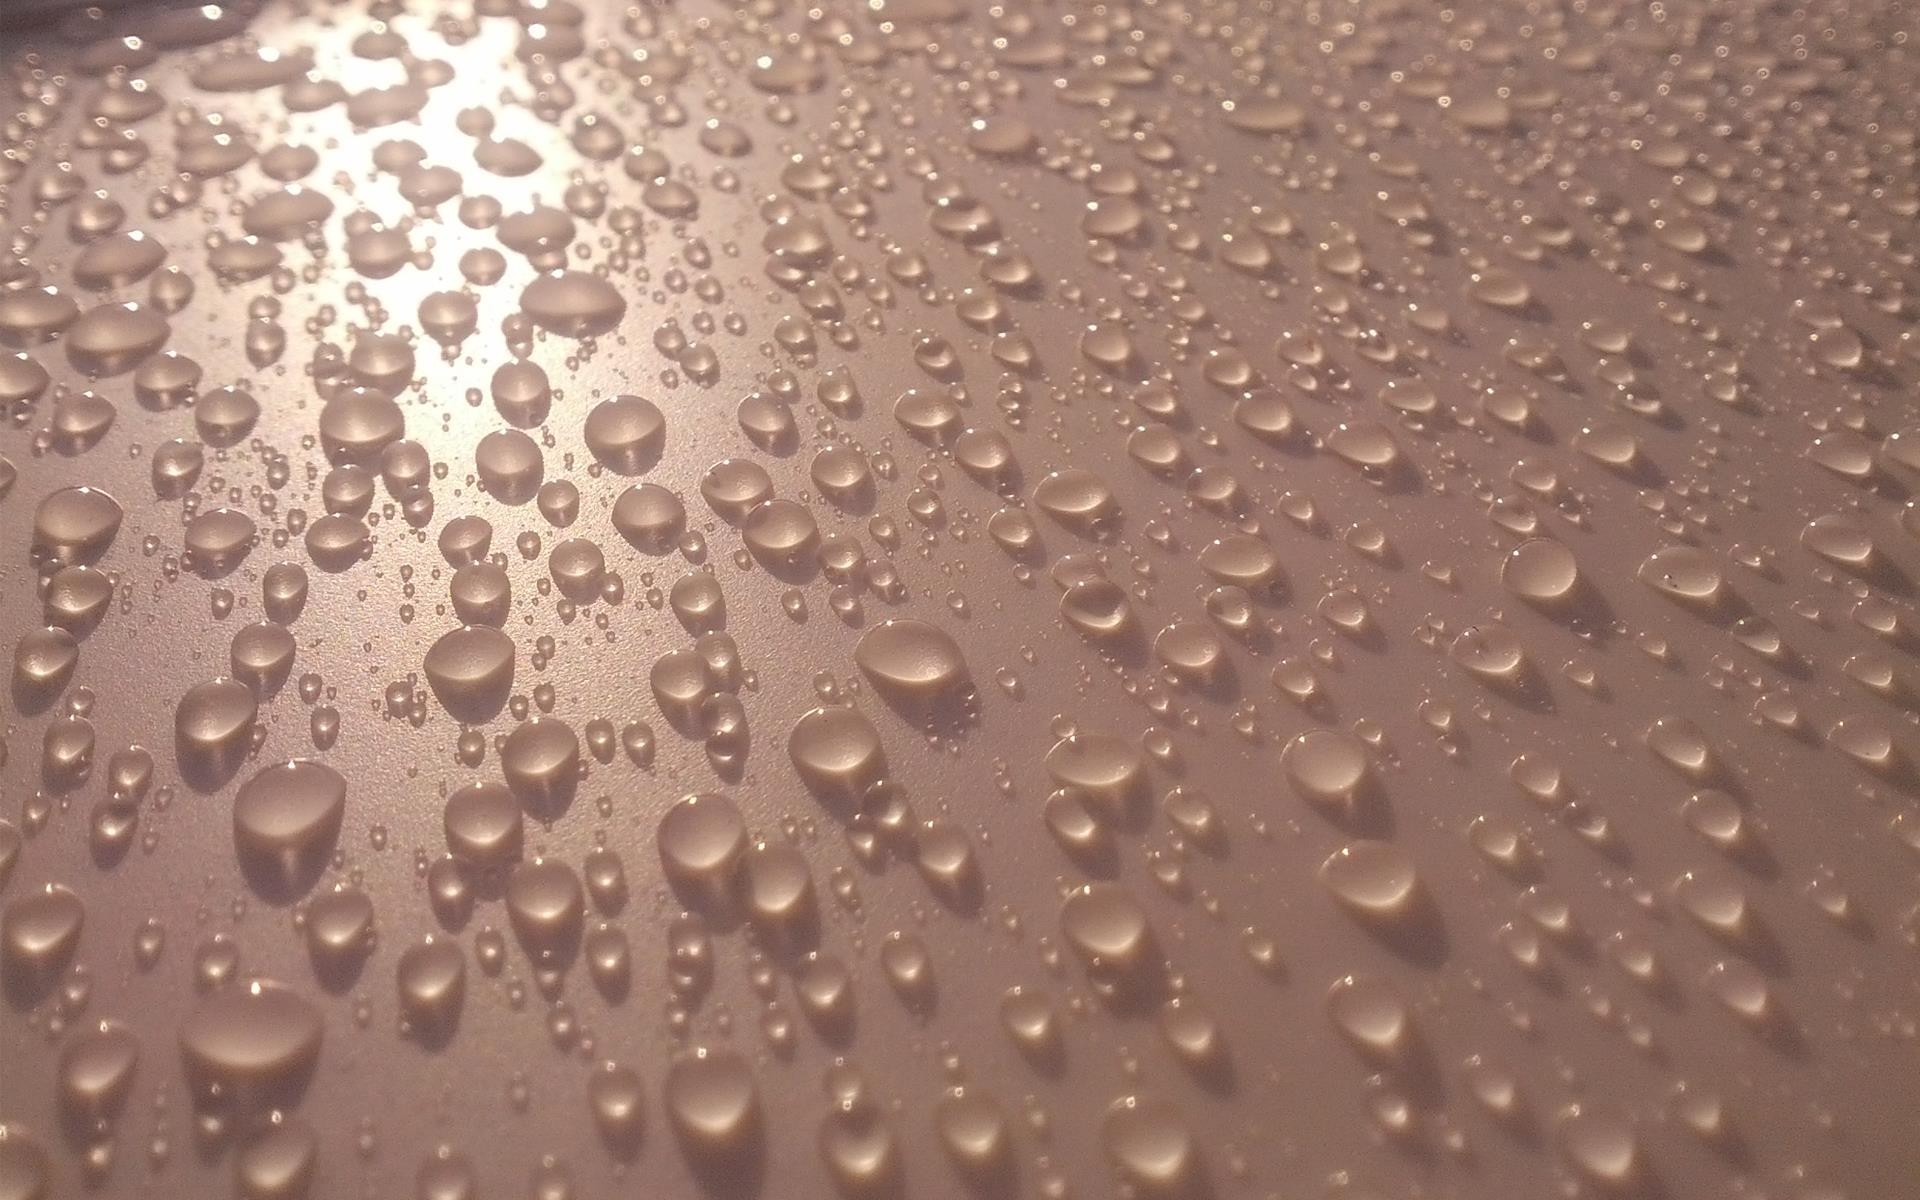 General 1920x1200 water drops liquid texture